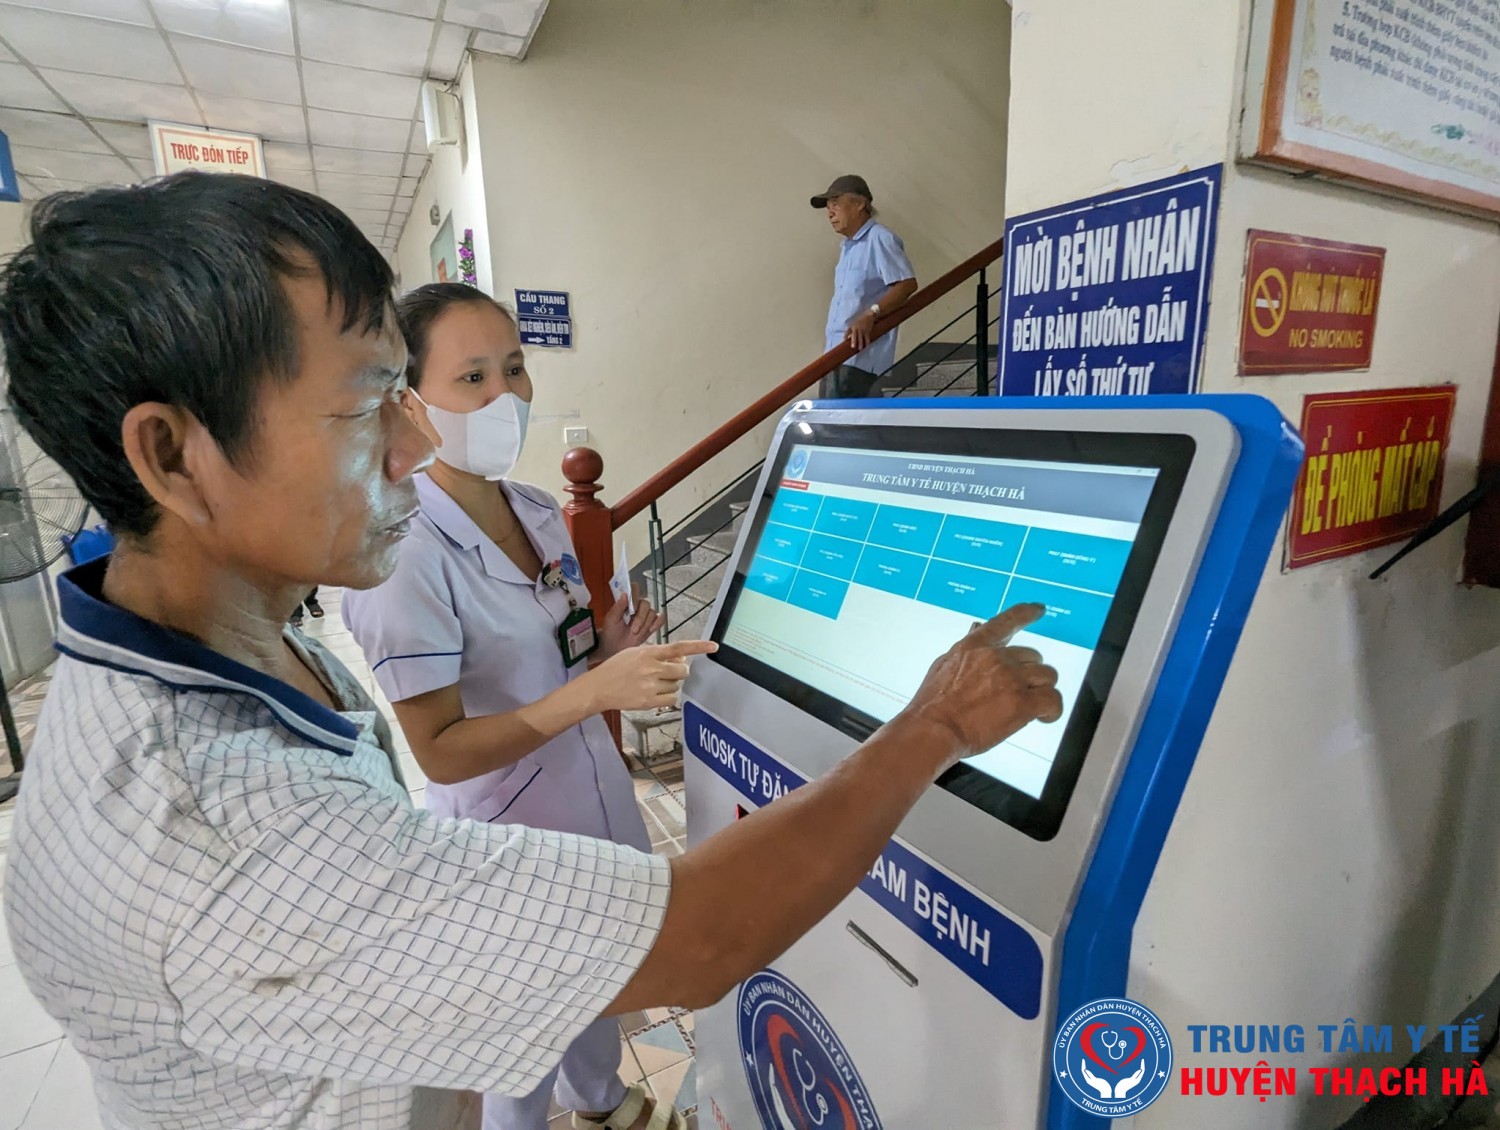 Trung tâm Y tế huyện Thạch Hà đưa vào sử dụng Kiosk đăng ký khám bệnh tự động